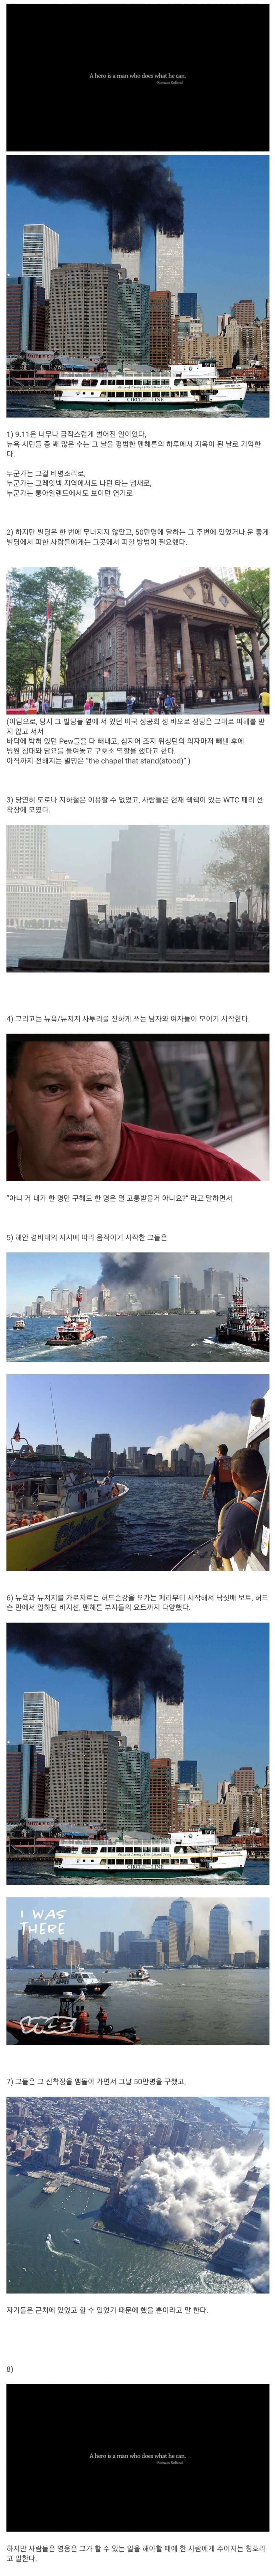 9.11 당시 한국에 알려지지 않은 일화